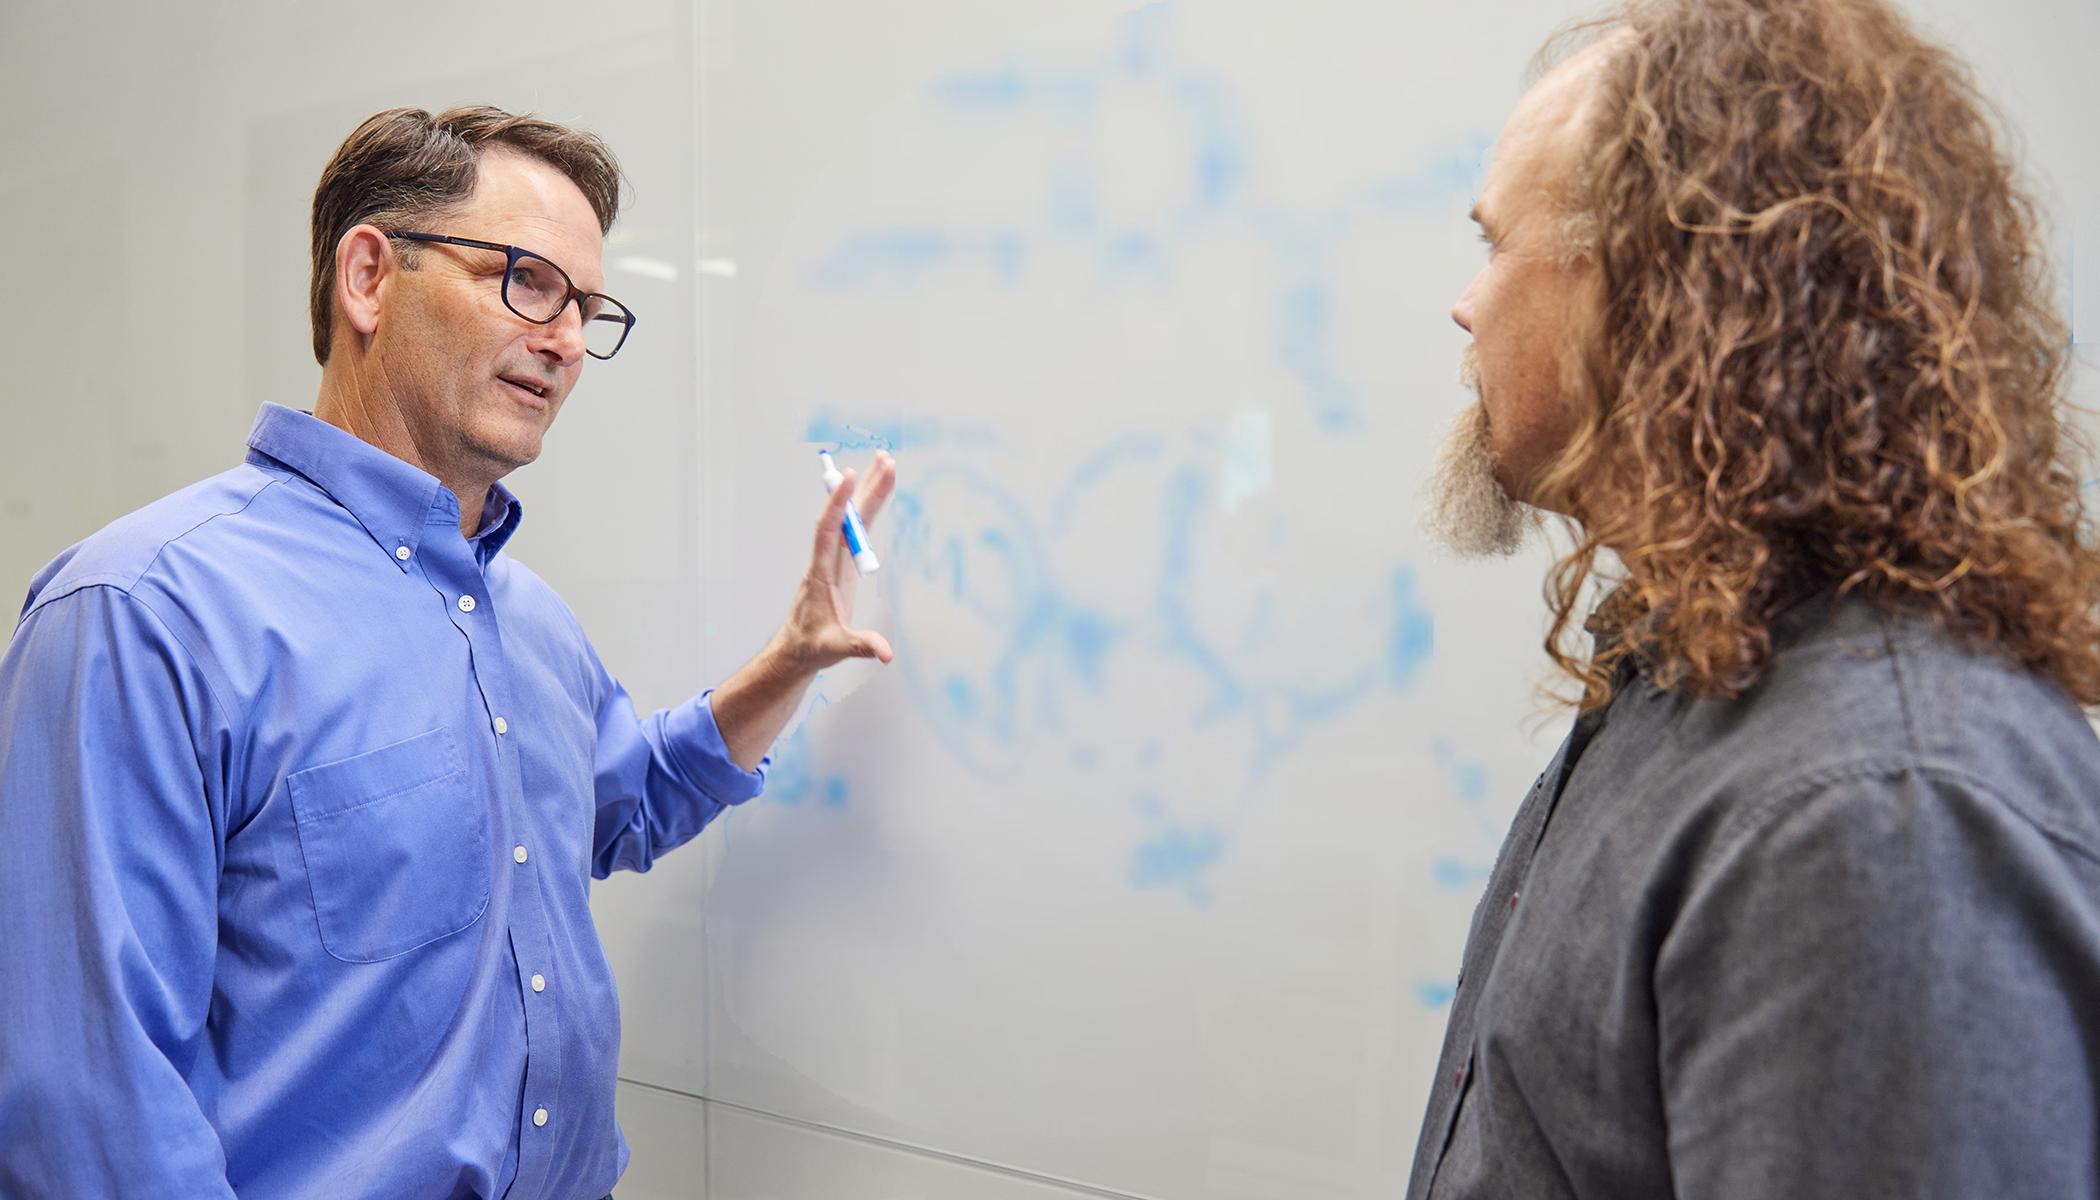 生物生物学家布雷特·克劳福德和丹·温特在白板上讨论一个科学公式